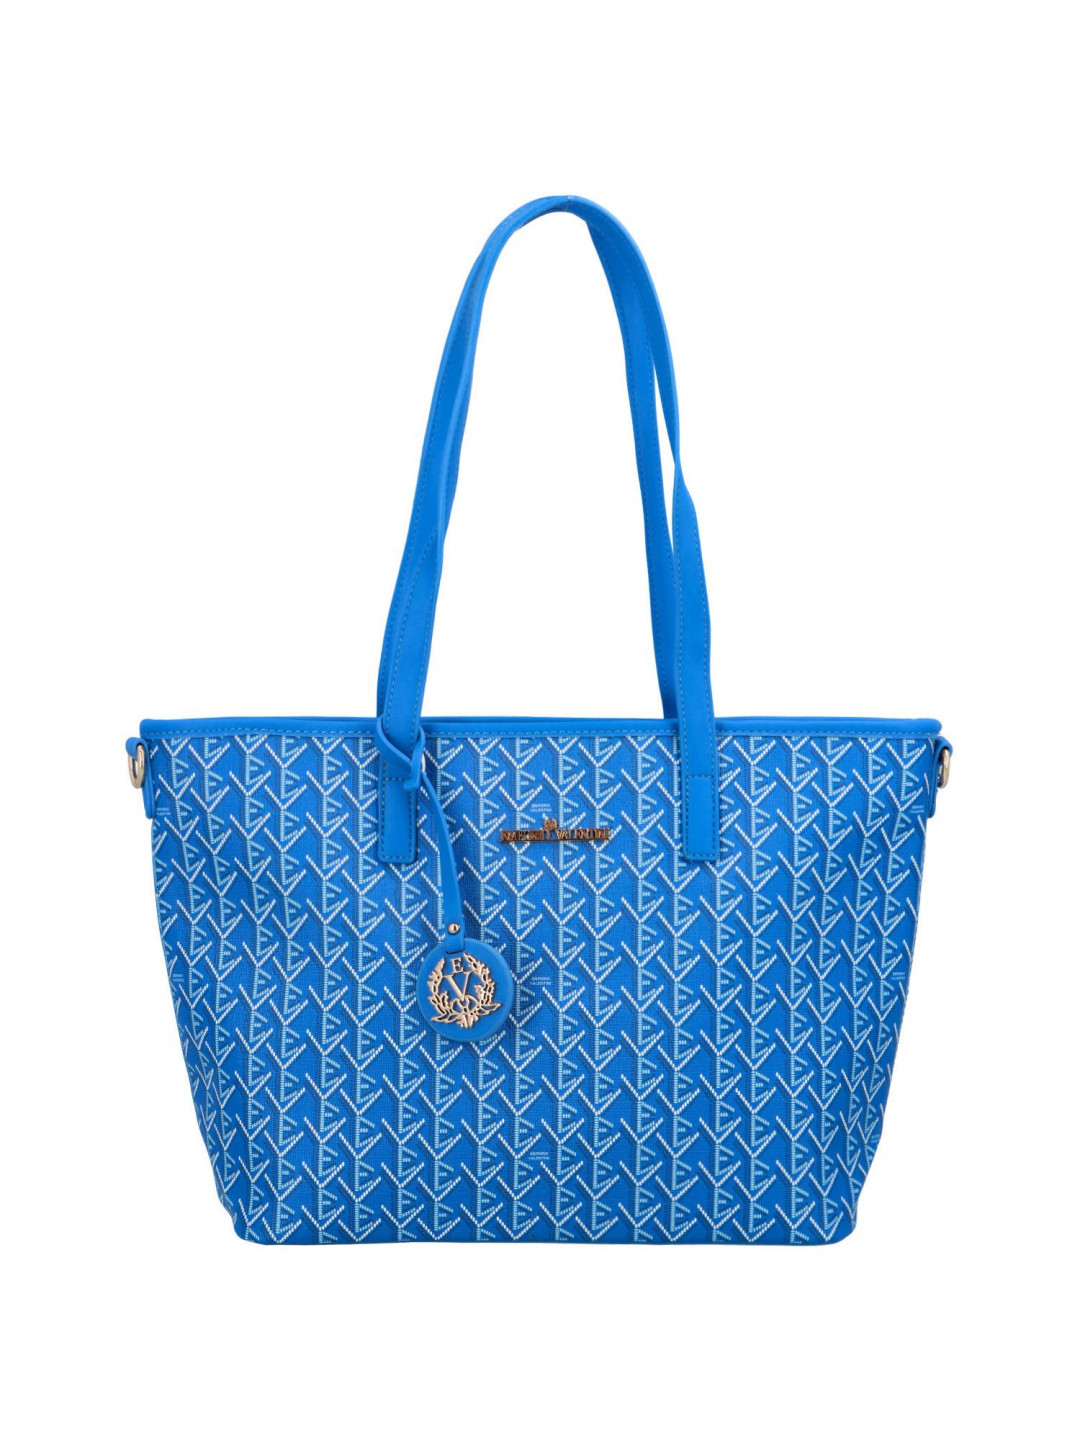 Výrazná dámská koženková kabelka přes rameno Poly modrá